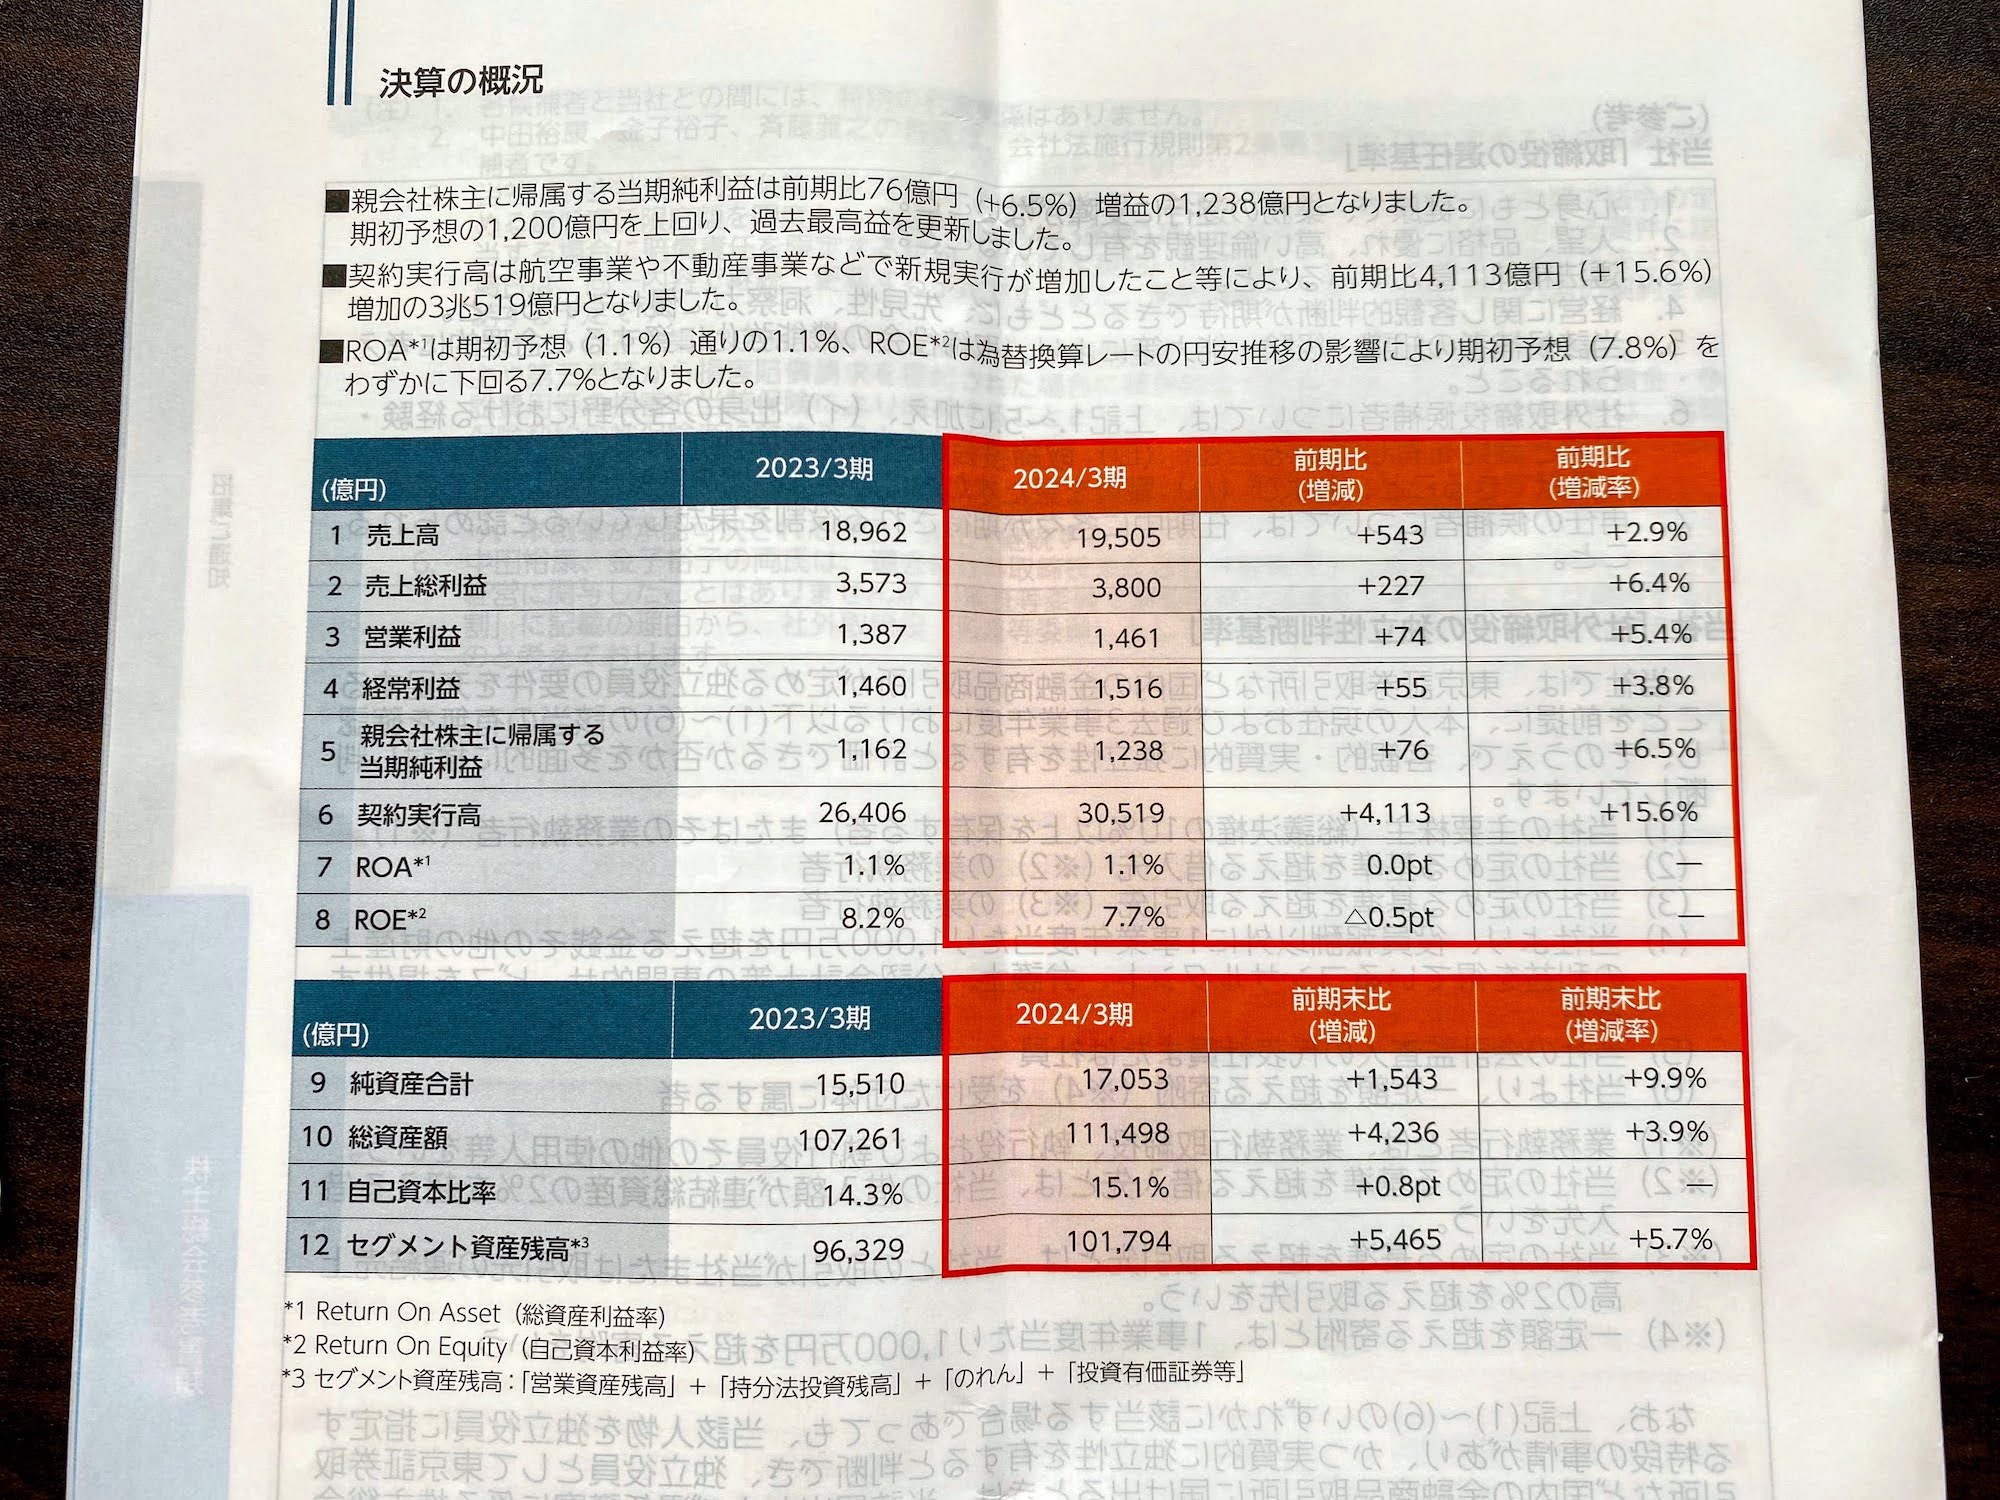 三菱HCキャピタル 決算概況／2024年6月、三菱HCキャピタルから株主向けに配布いただいた資料